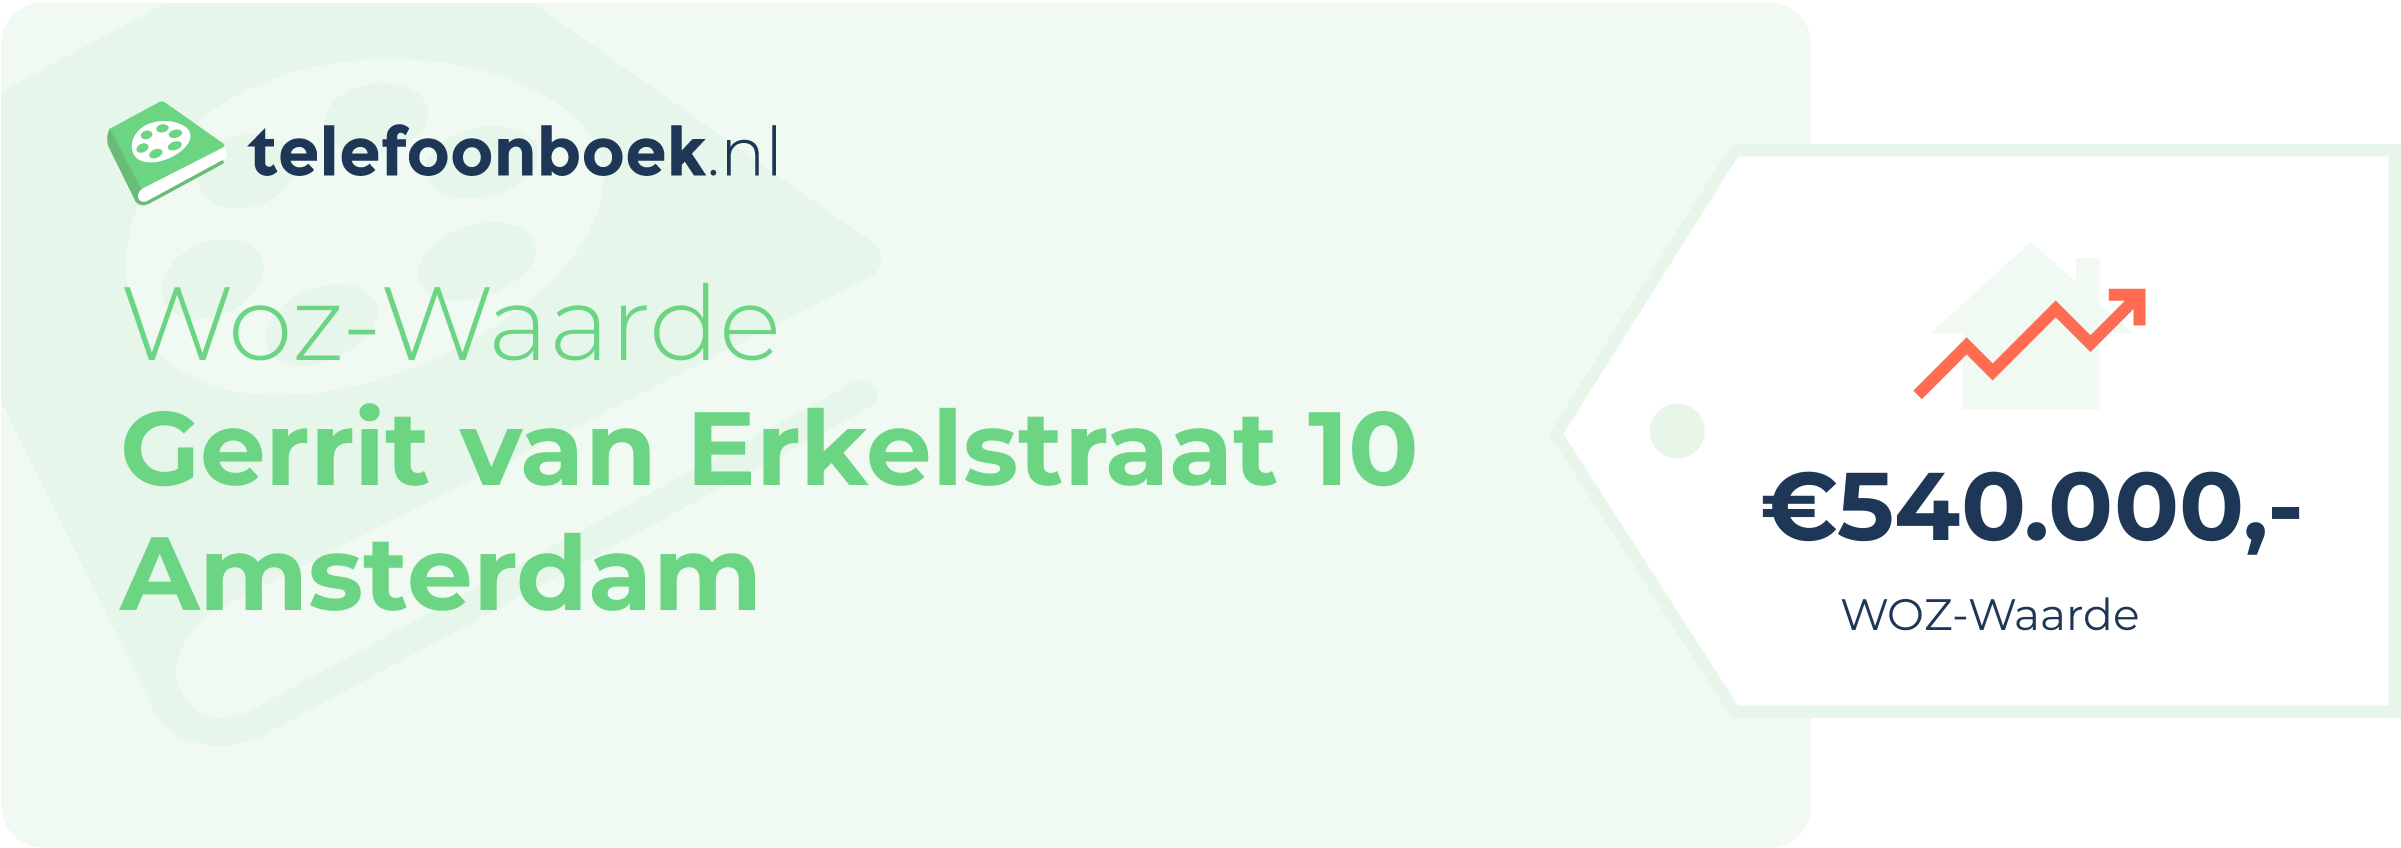 WOZ-waarde Gerrit Van Erkelstraat 10 Amsterdam